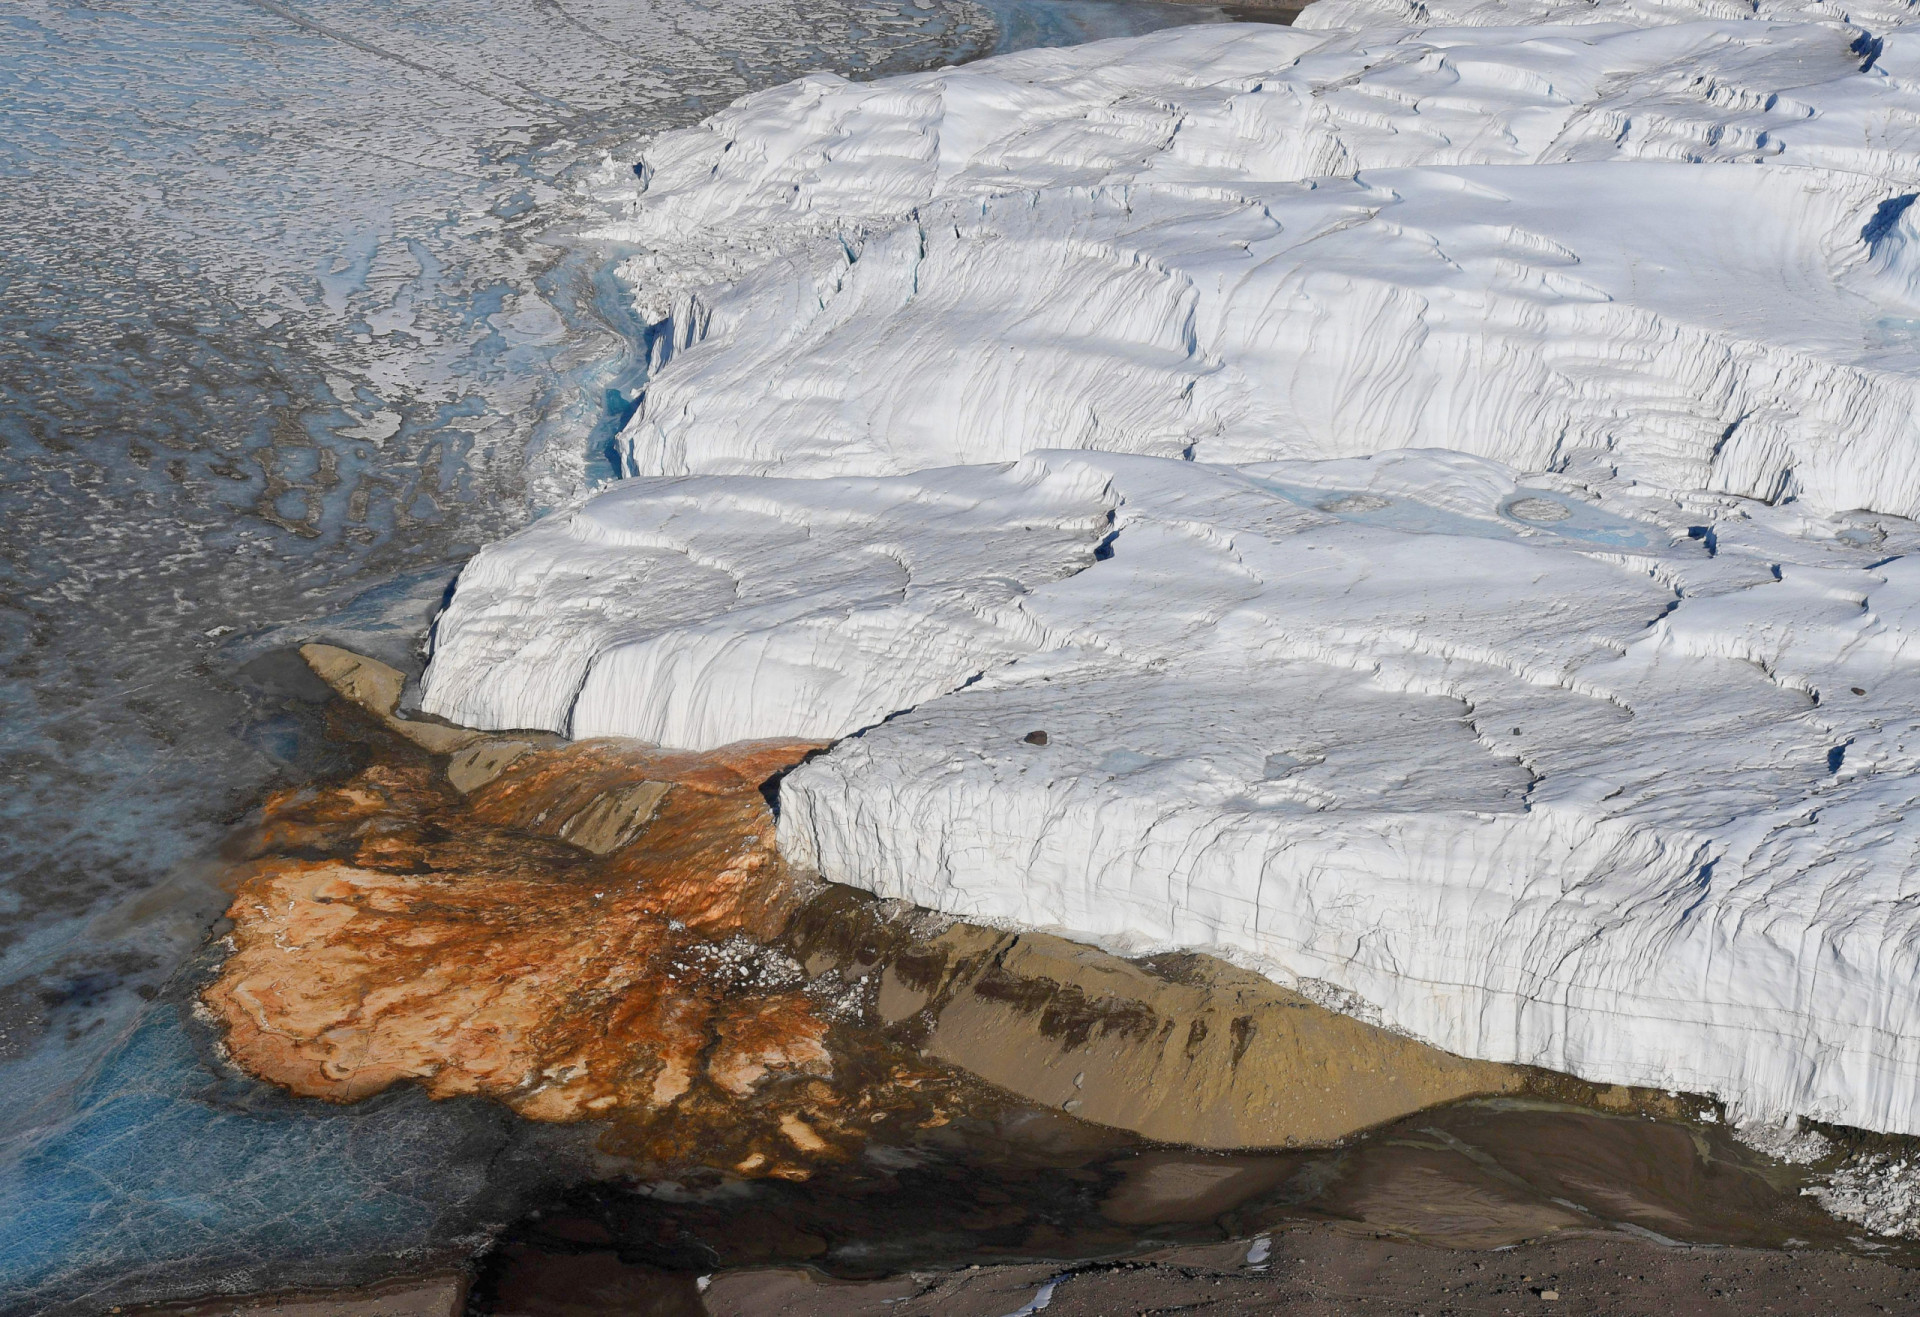 <p>Le glacier Taylor, dans la région de la Terre Victoria en Antarctique, présente un phénomène géologique étrange... en effet, il saigne ! Ce que l'on appelle les "chutes de sang" est un écoulement d'eau océanique ancienne riche en oxyde de fer piégée sous le glacier et qui s'infiltre dans le détroit de McMurdo.</p>